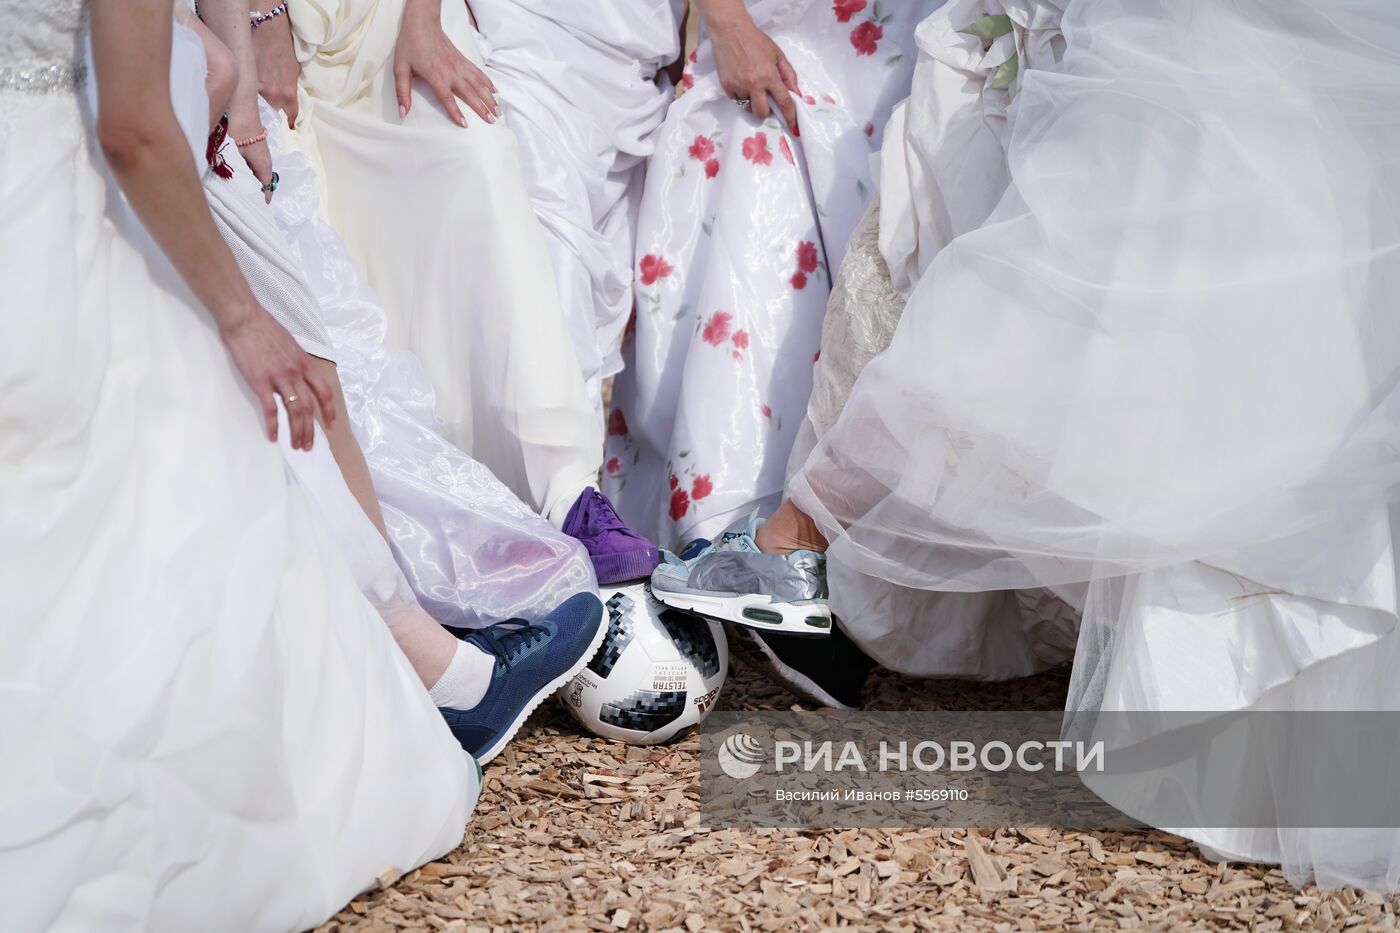 "Матч невест" прошел в Казани